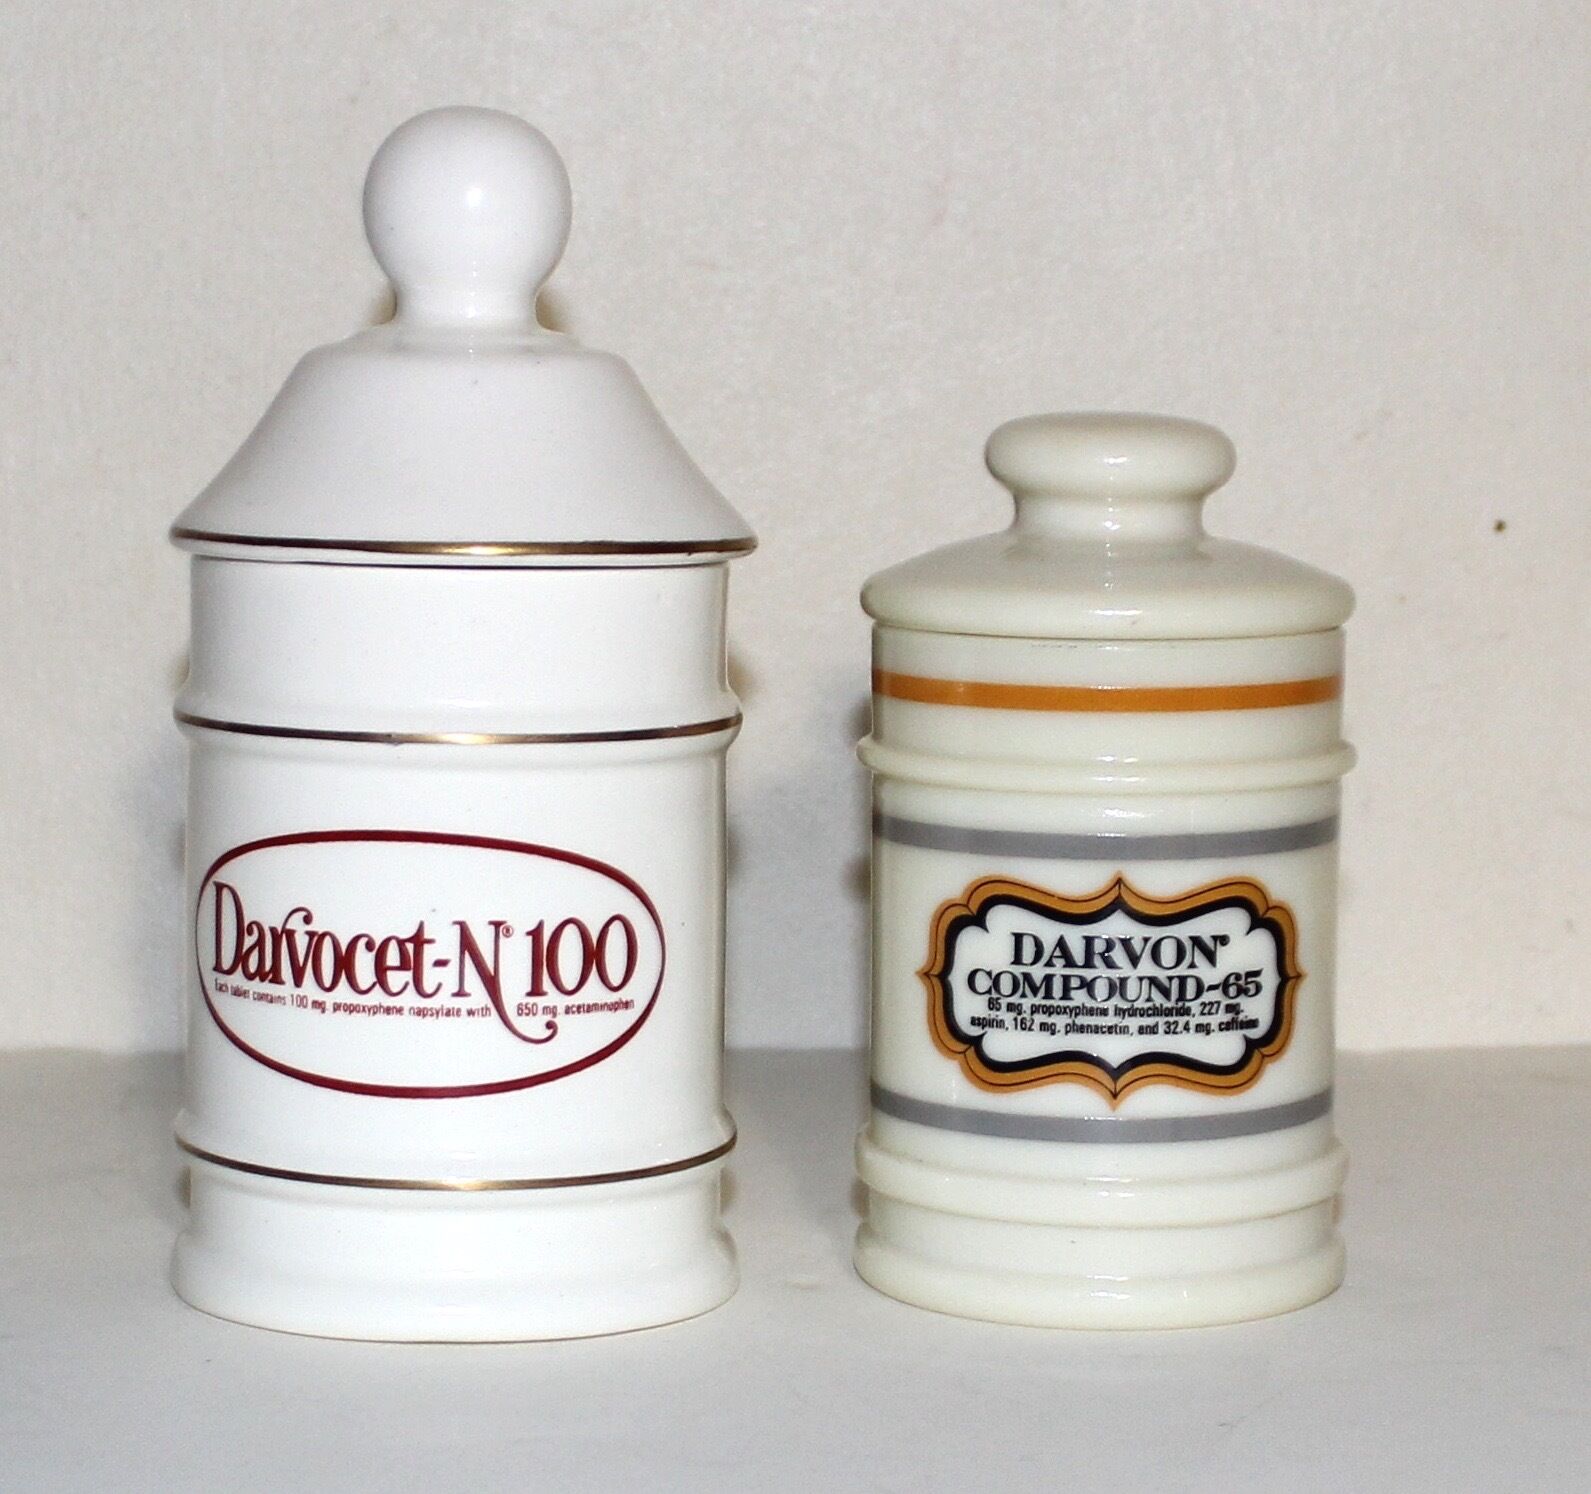 DARVON Darvocet vintage set of two ceramic canister jars Lilly propoxyphene